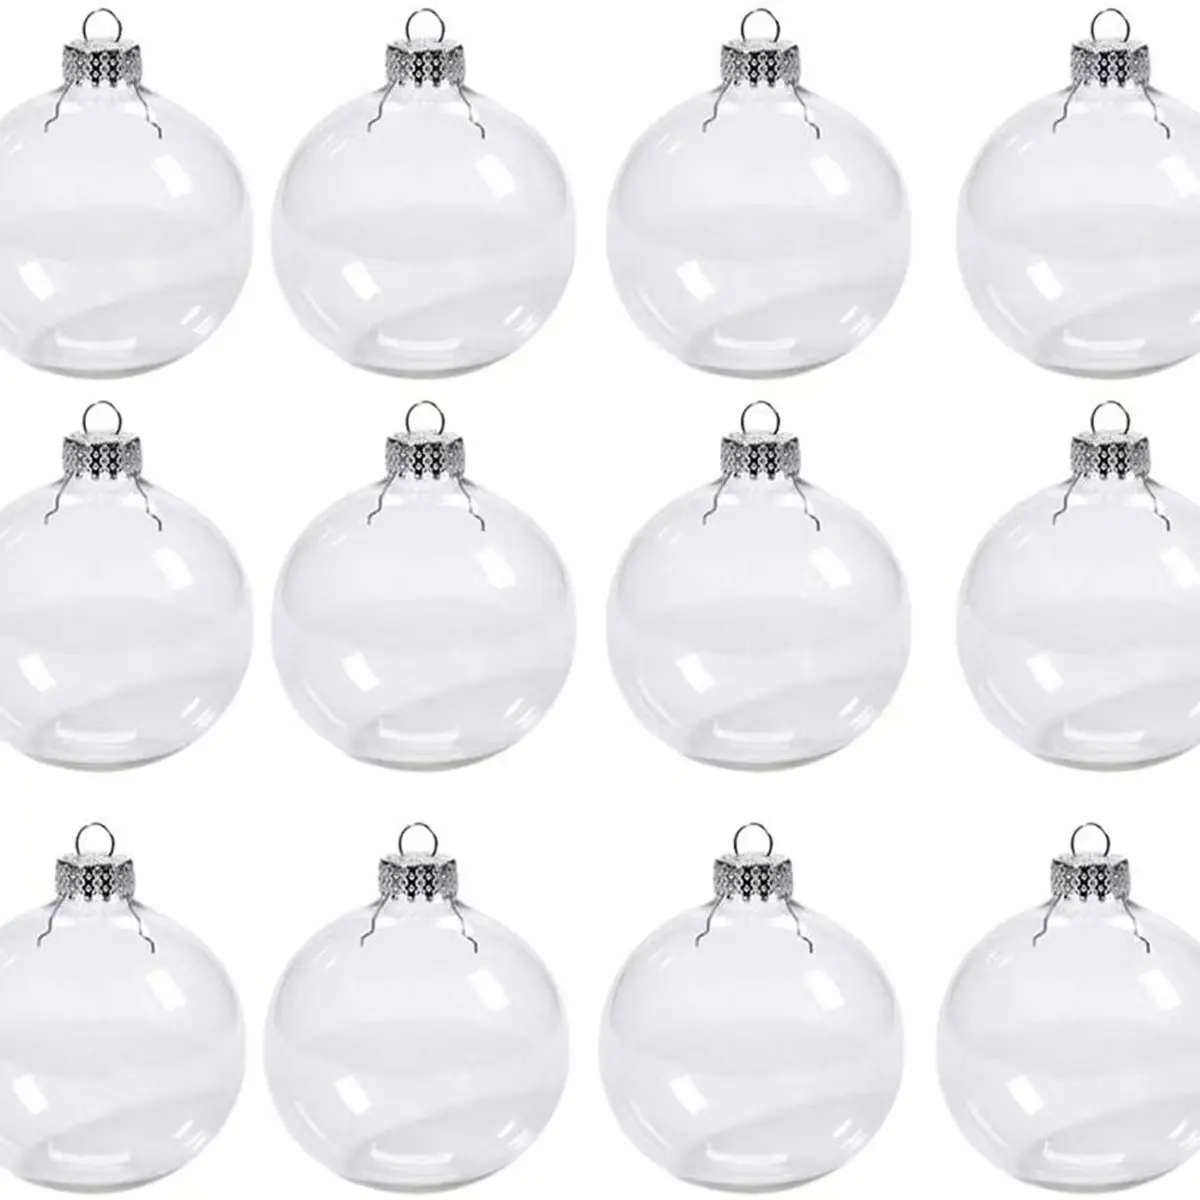 シルバーゴールドトップ3-20cmプラスチックラグジュアリークリアクリスマスボール装飾ハンギング透明クリスマスボール家の装飾用